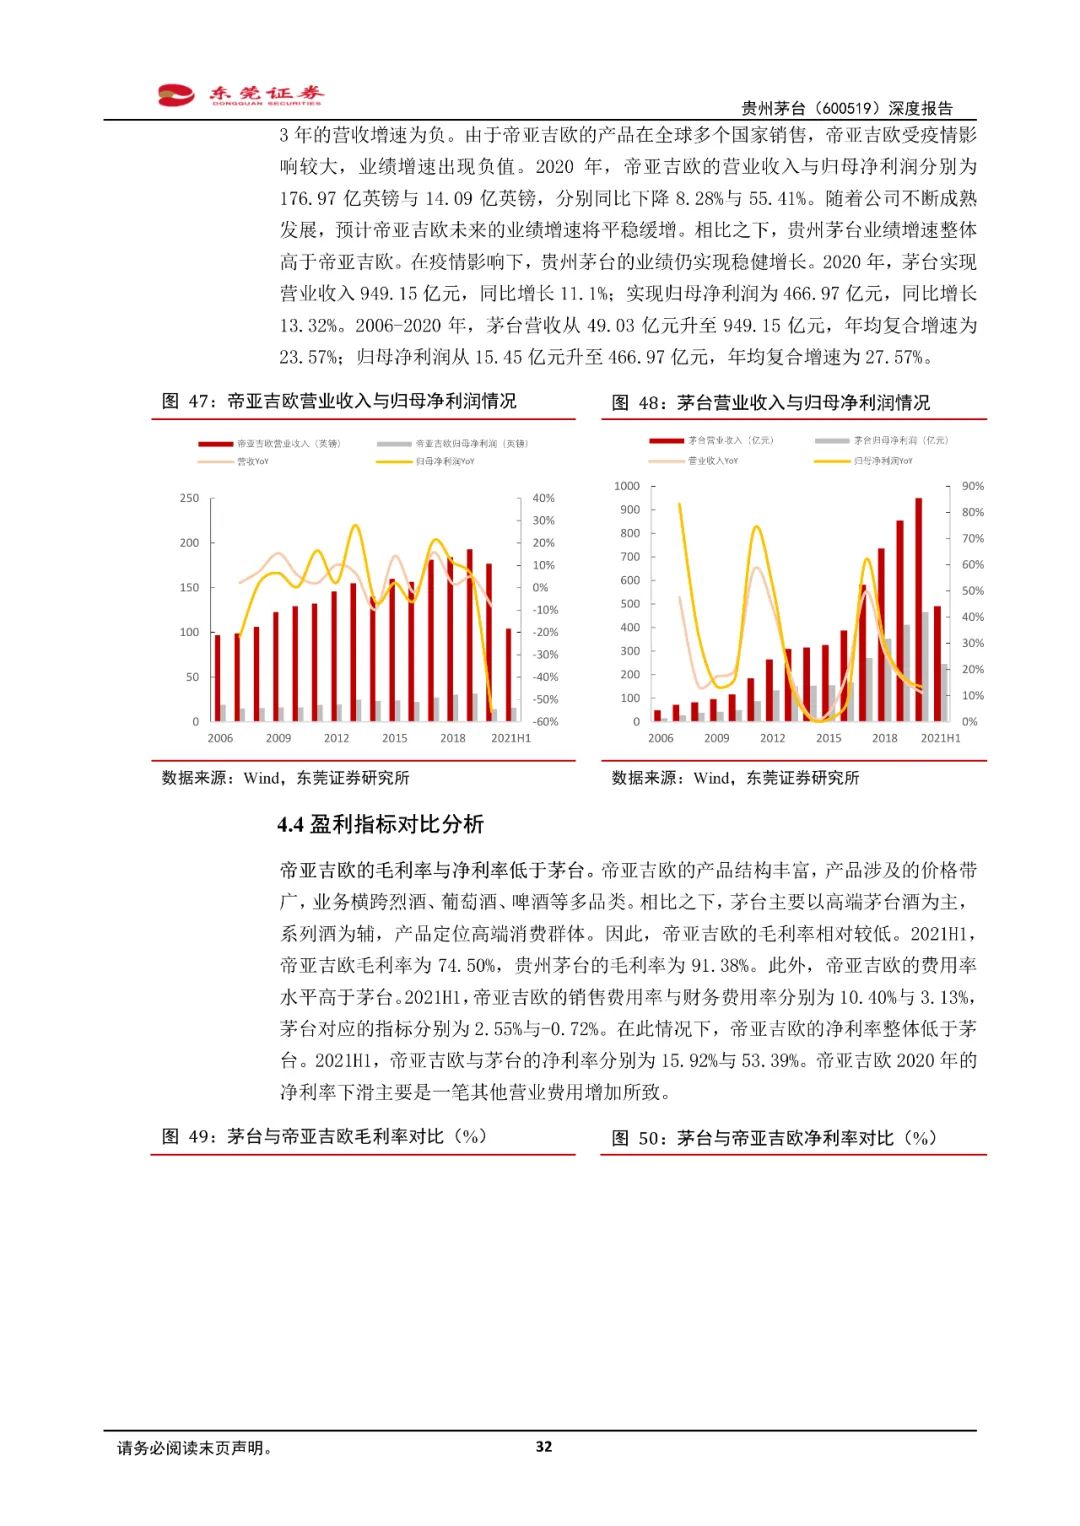 贵州茅台深度报告:峥嵘七十载,万亿白酒龙头行稳致远